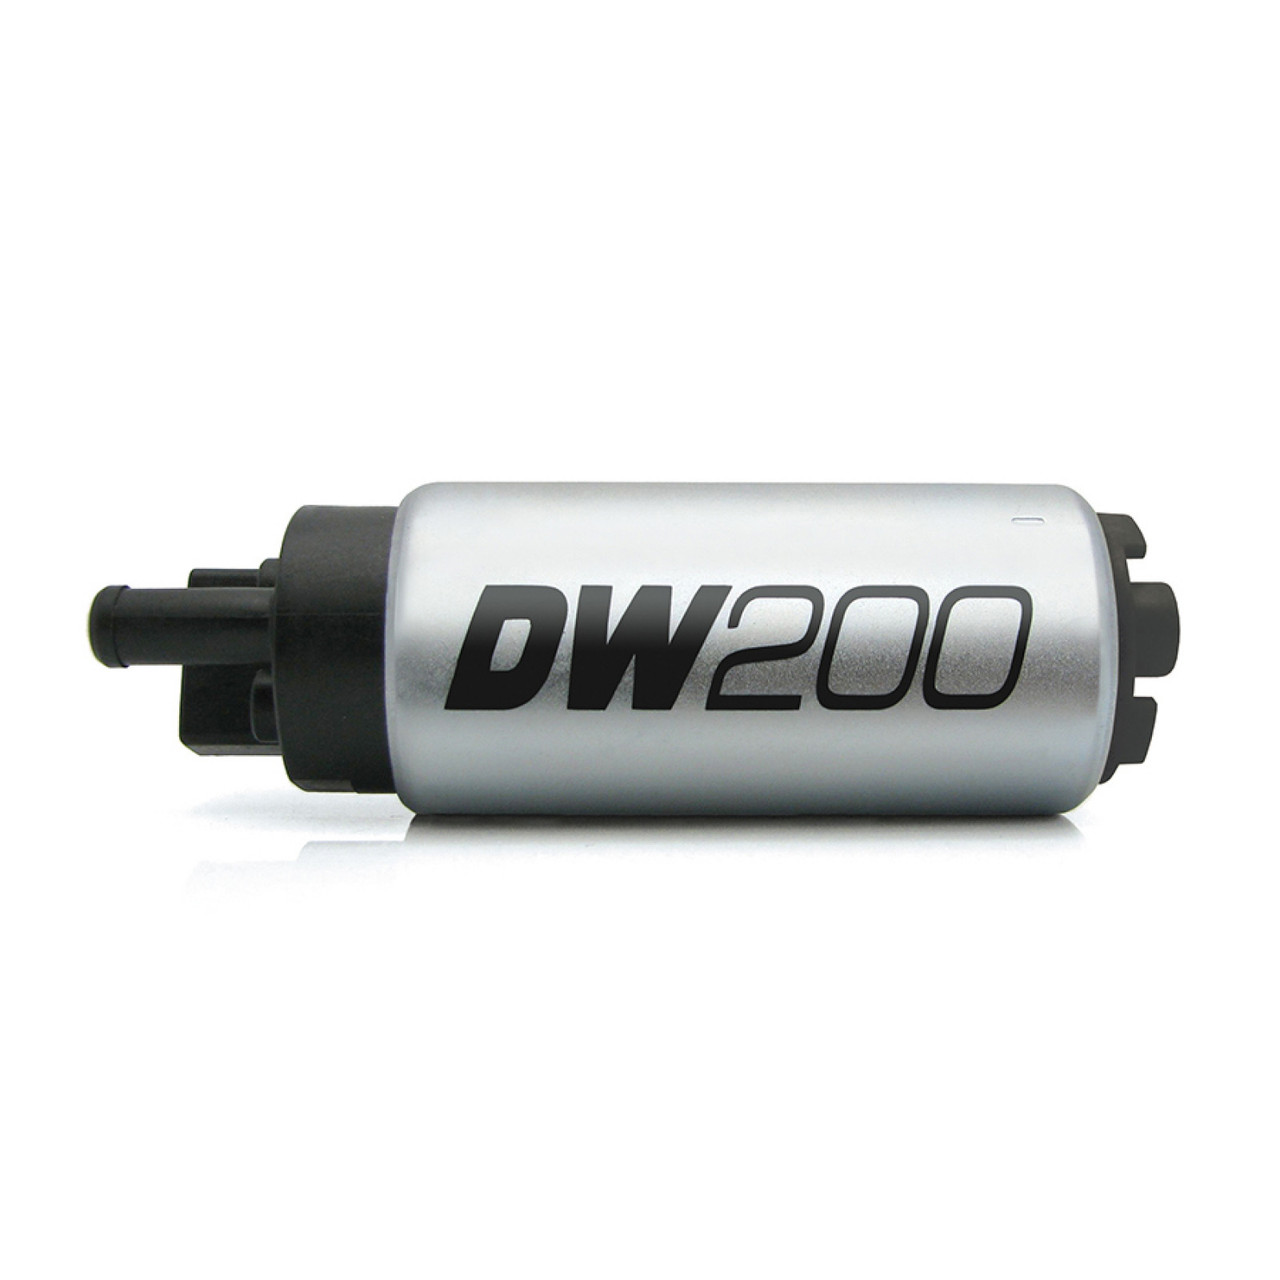 Deatschwerks DW200 255lph Fuel Pump for 92-95 BMW 325i (DEW-9-201-1031)